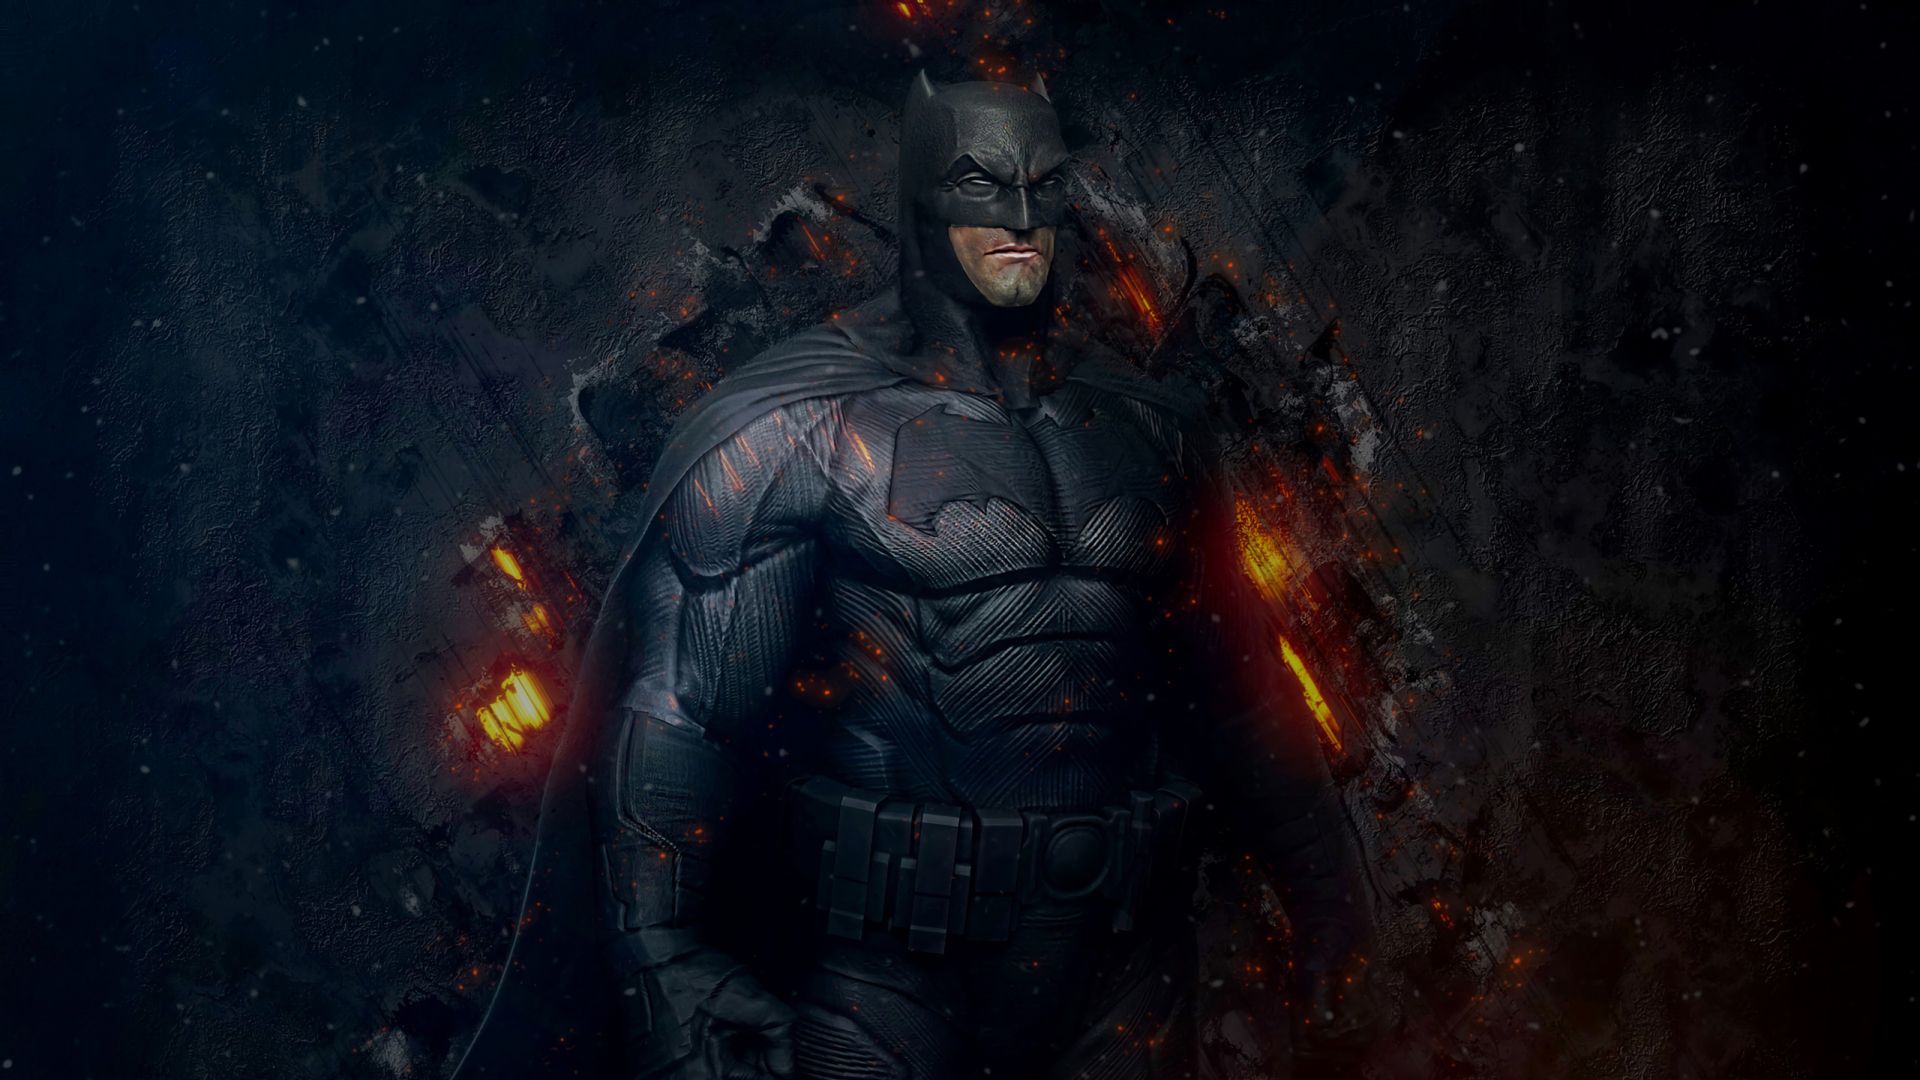 batman wallpaper hd 1080p